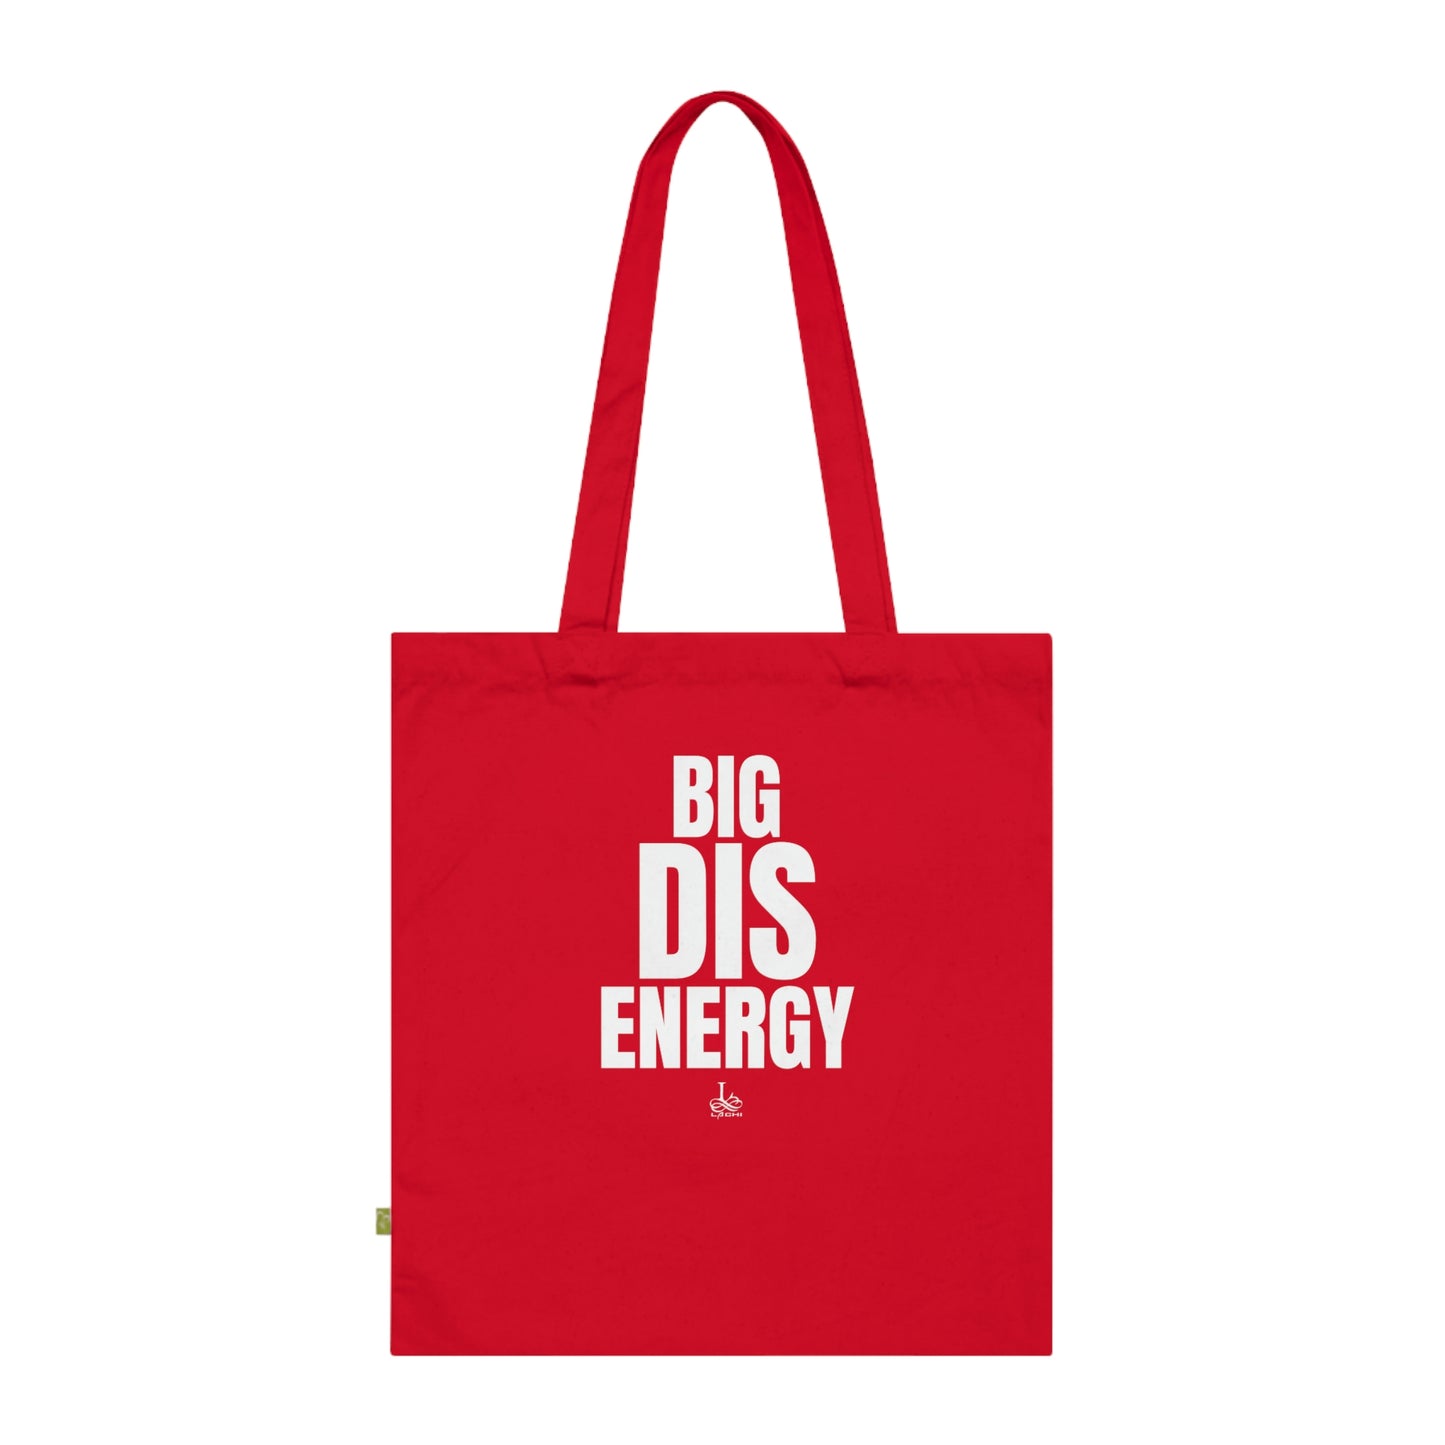 Big DIS energy! - Organic Cotton Tote Bag